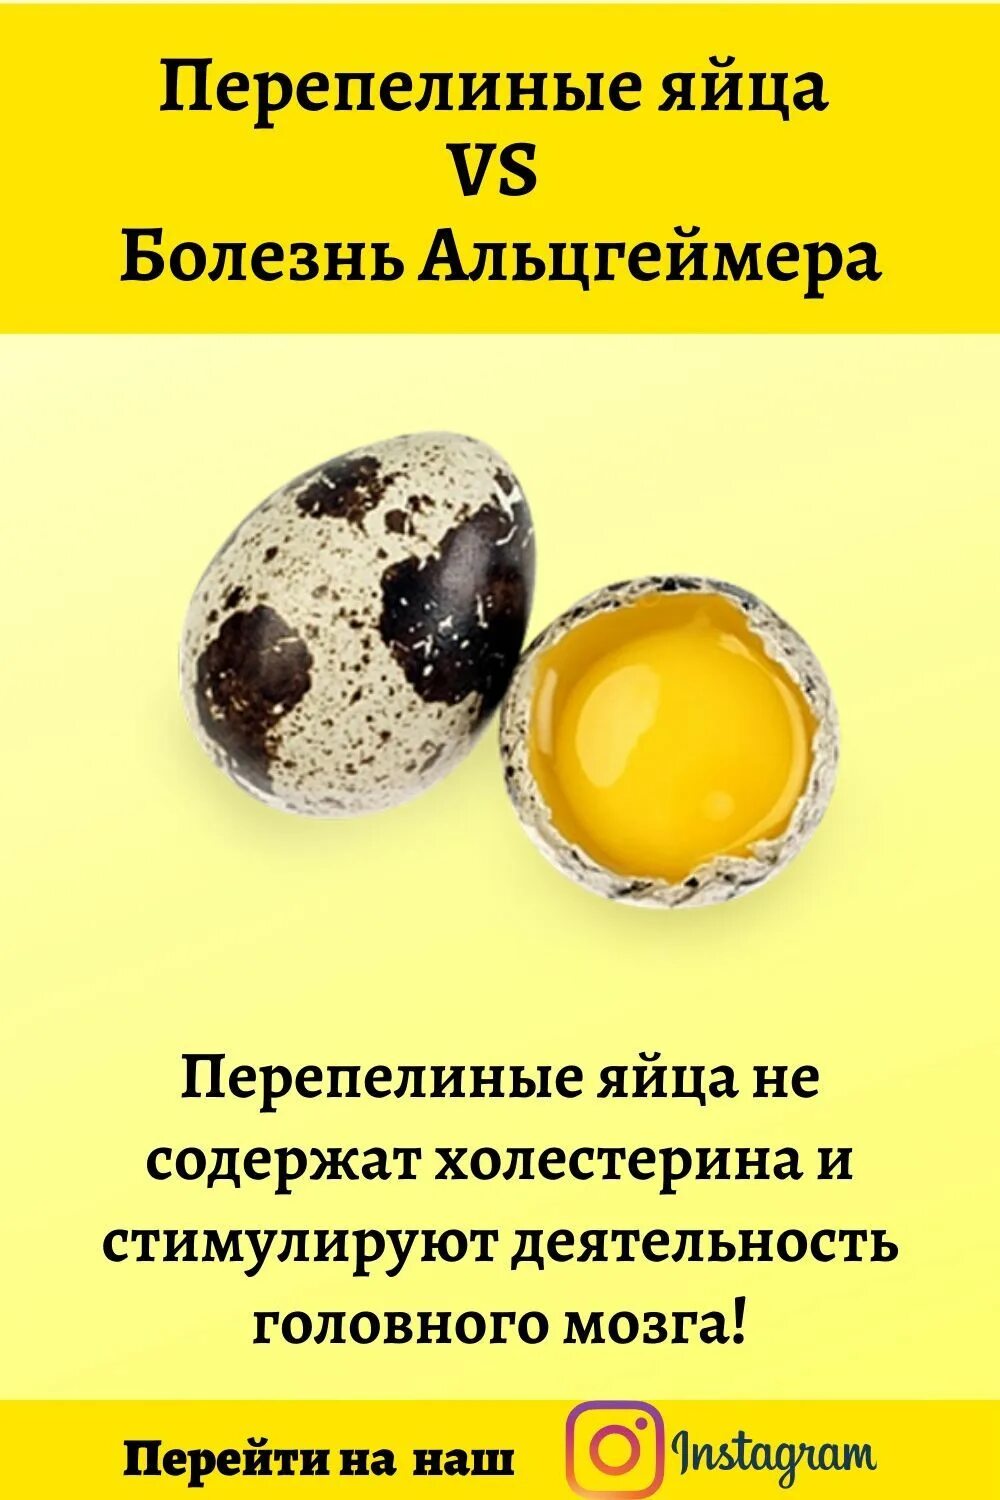 Сколько перепелиных яиц можно взрослому. Яйцо перепелиное. Холестерин в перепелиных яйцах. Размер перепелиного яйца. Витамины в перепелиных яйцах.